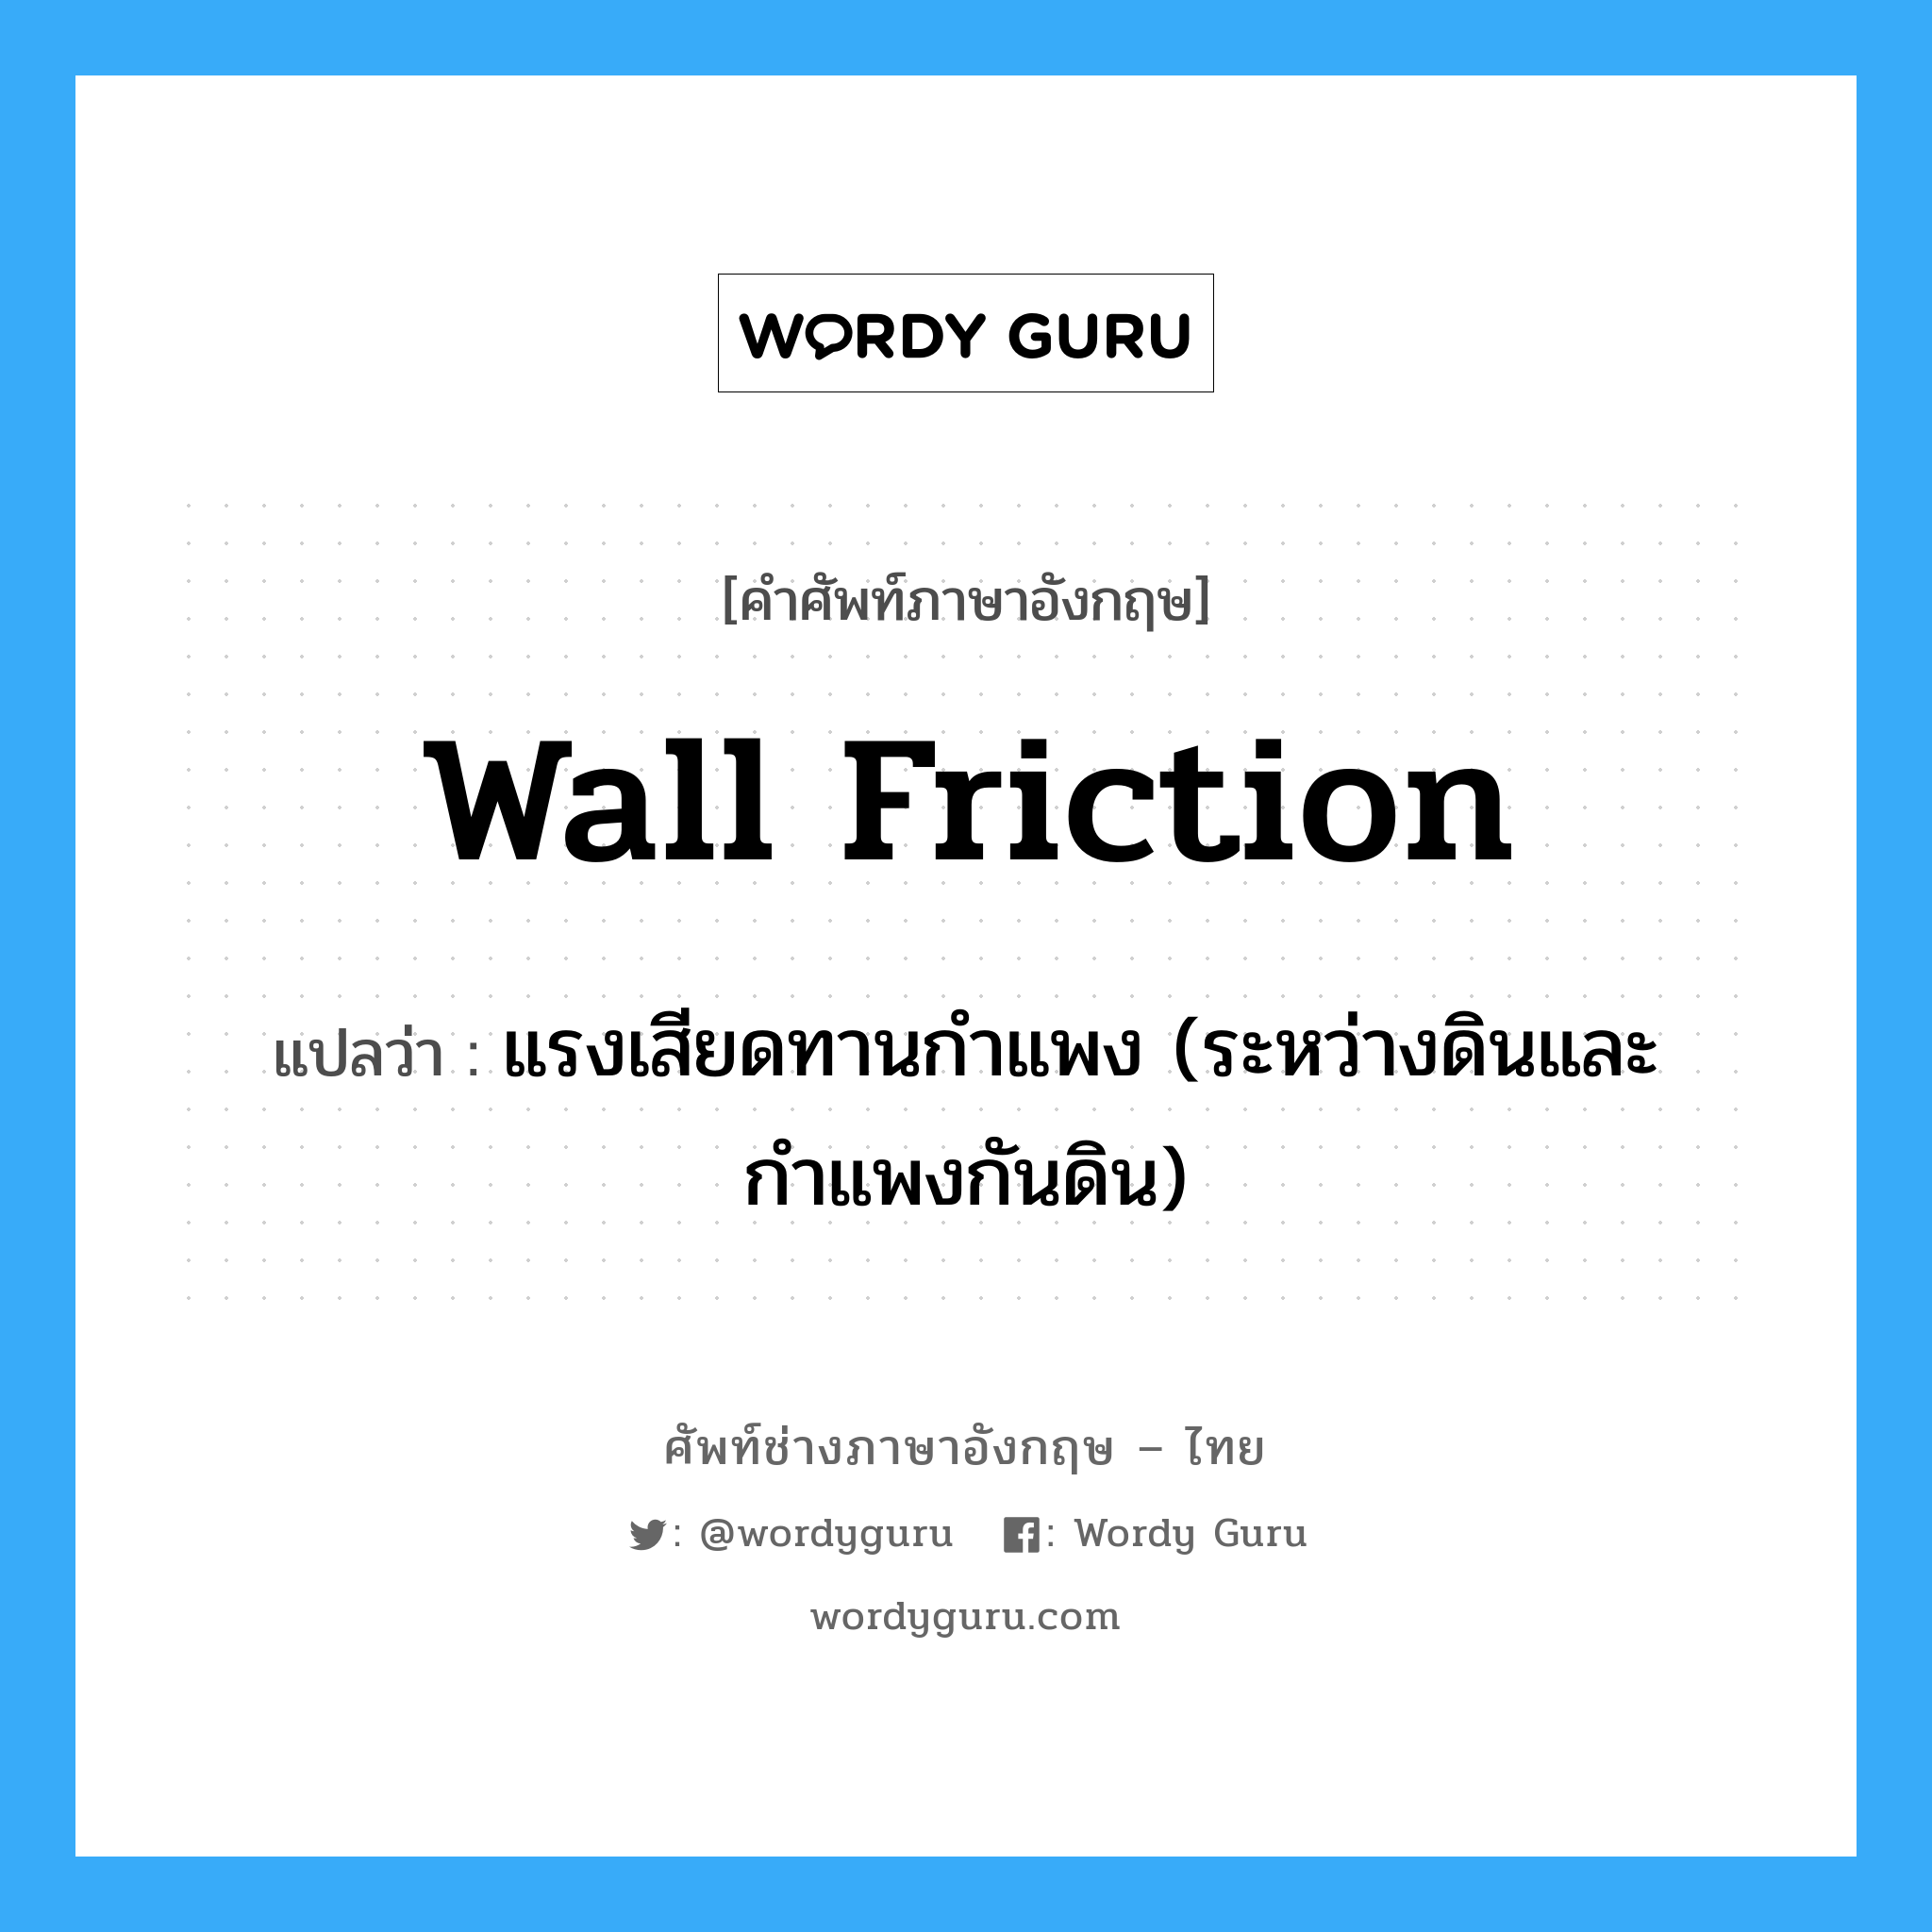 wall friction แปลว่า?, คำศัพท์ช่างภาษาอังกฤษ - ไทย wall friction คำศัพท์ภาษาอังกฤษ wall friction แปลว่า แรงเสียดทานกำแพง (ระหว่างดินและกำแพงกันดิน)